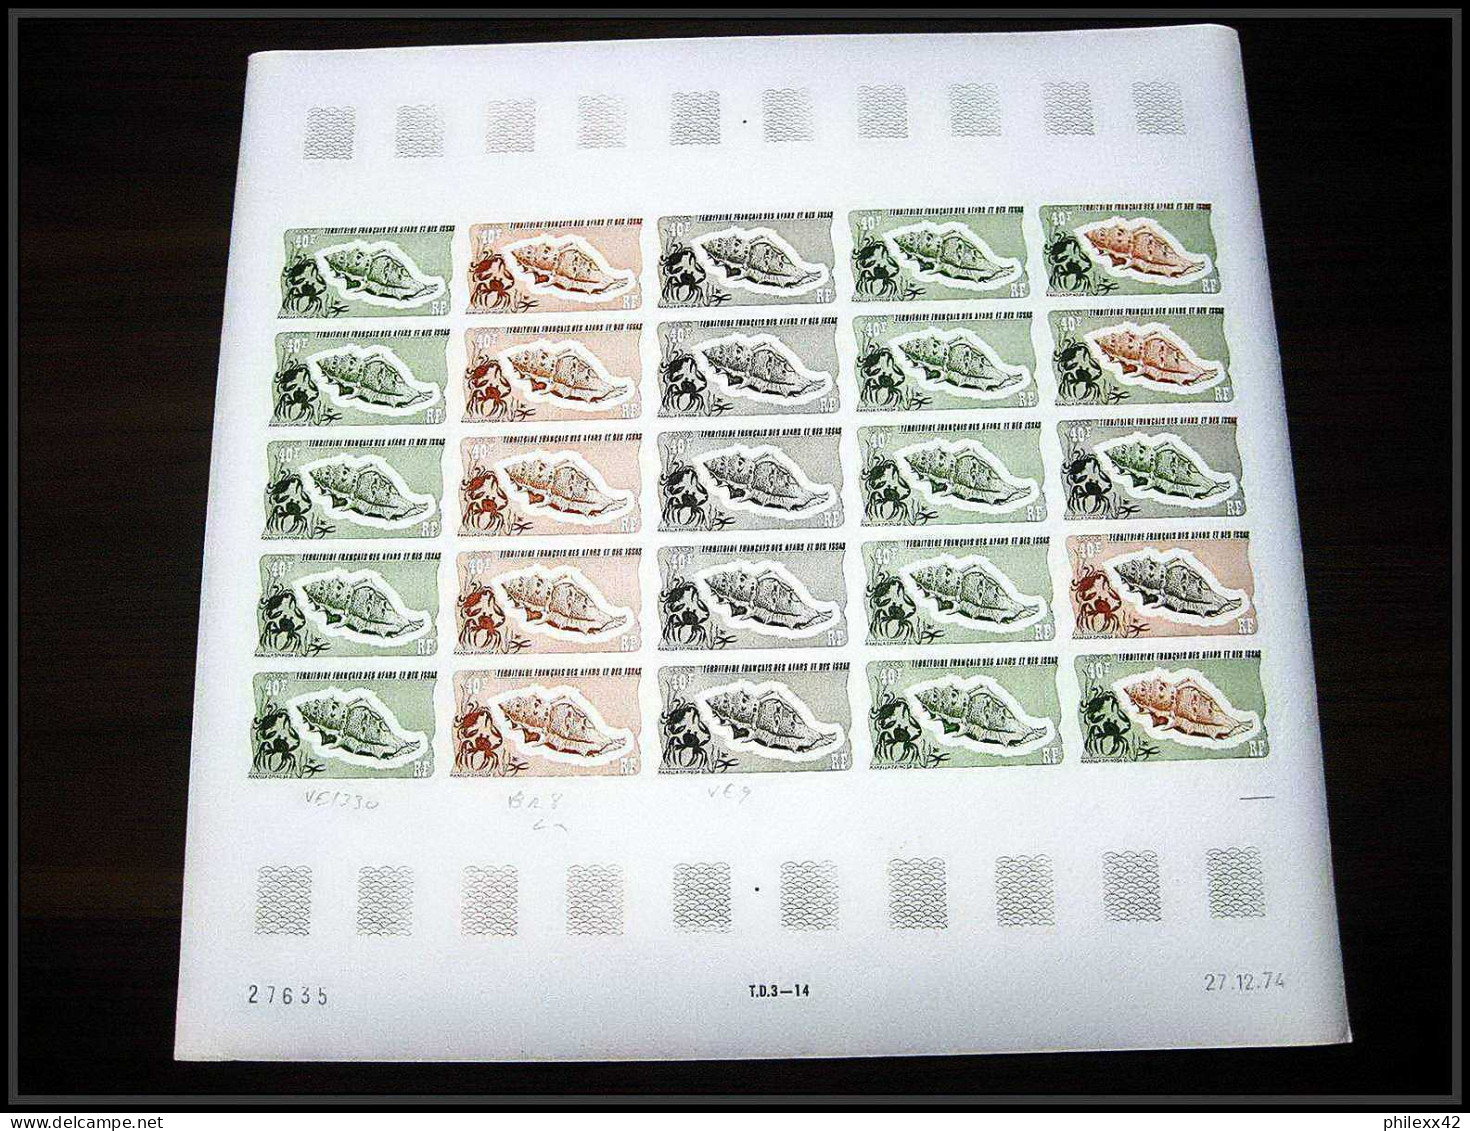 91176 Afars et Issas 1975 coquillage shell 625 timbres feuilles complète (sheets) Essai proof Non dentelé imperf